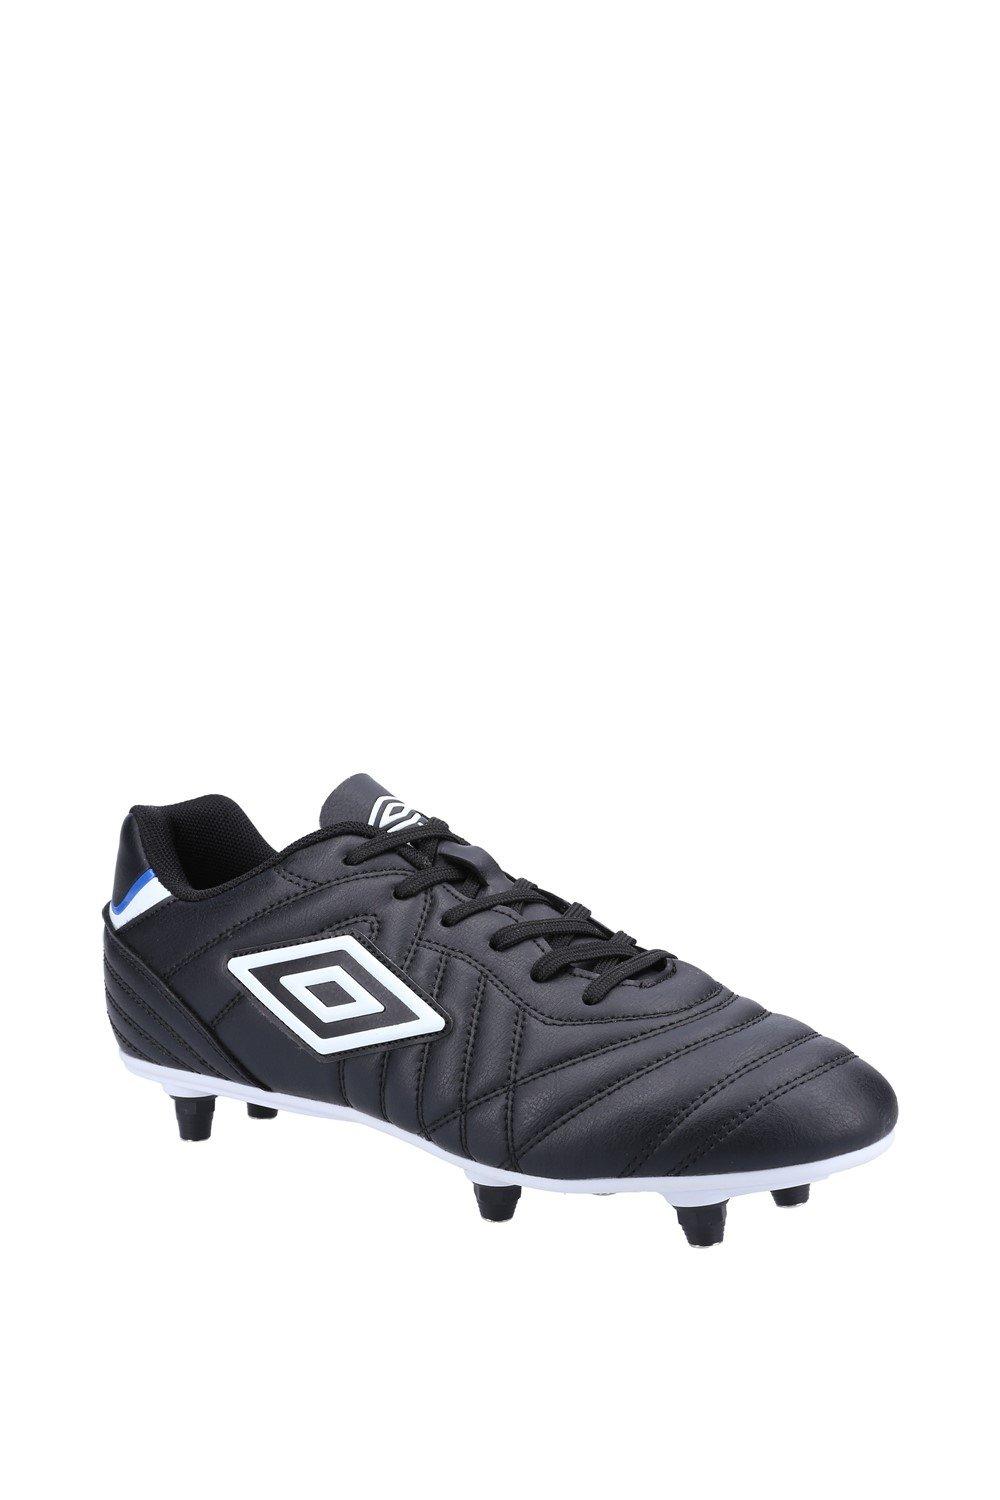 ’Speciali Liga SG’ Football Boots